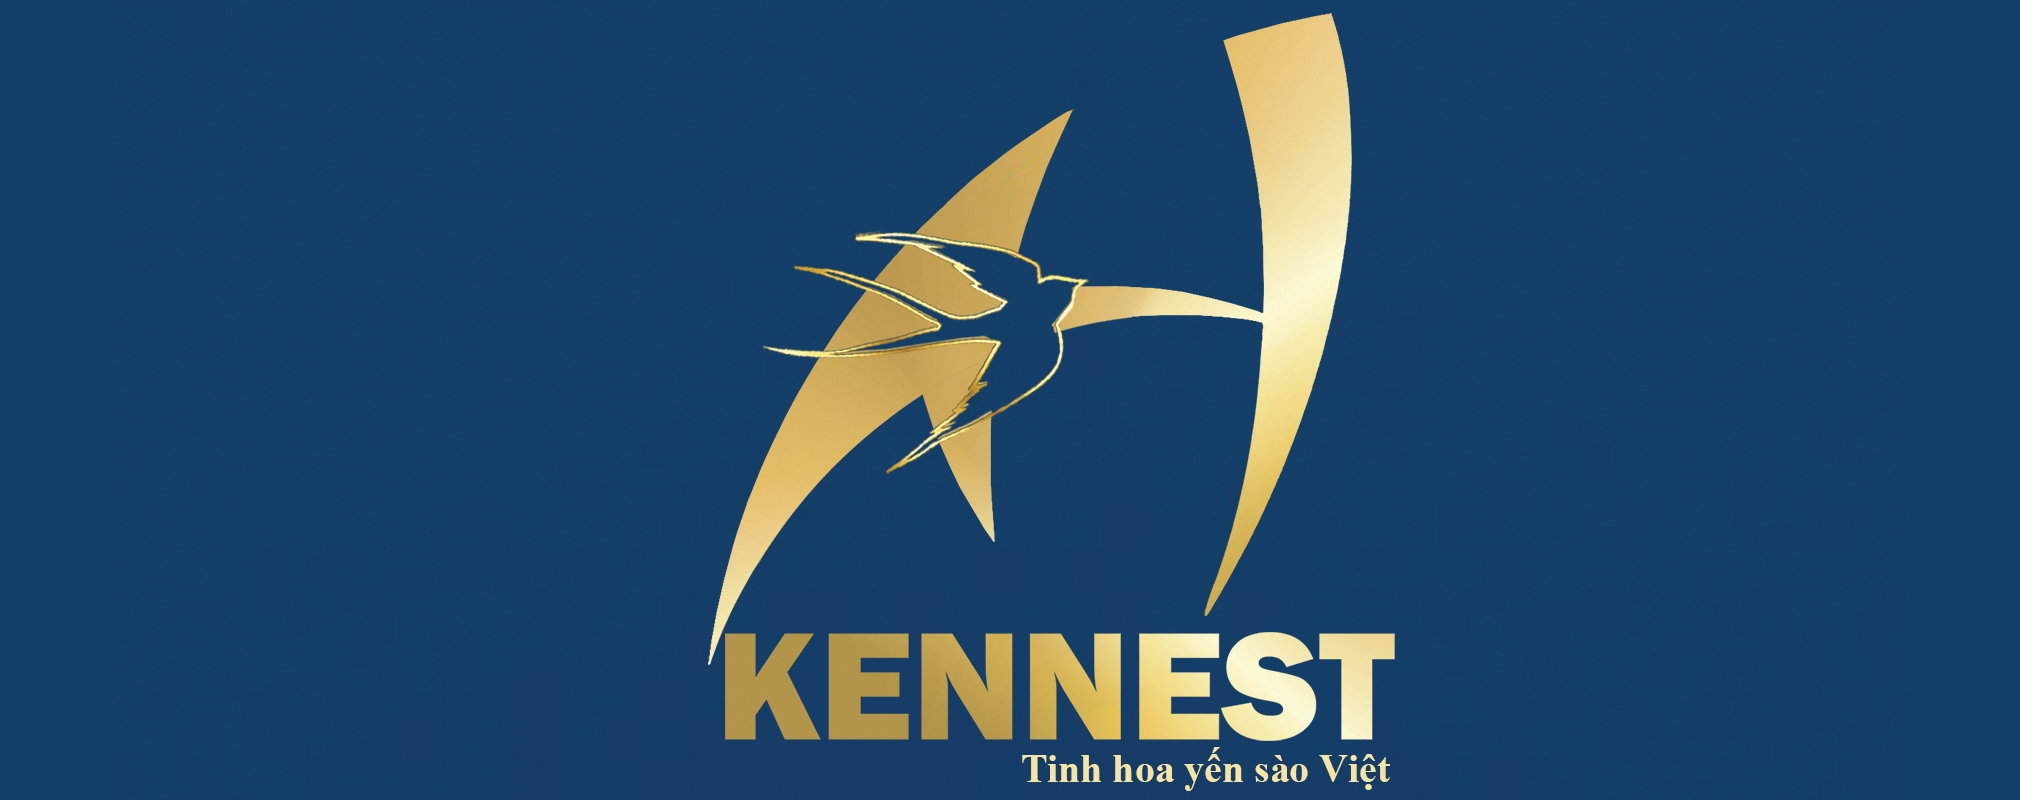 logo KENNEST